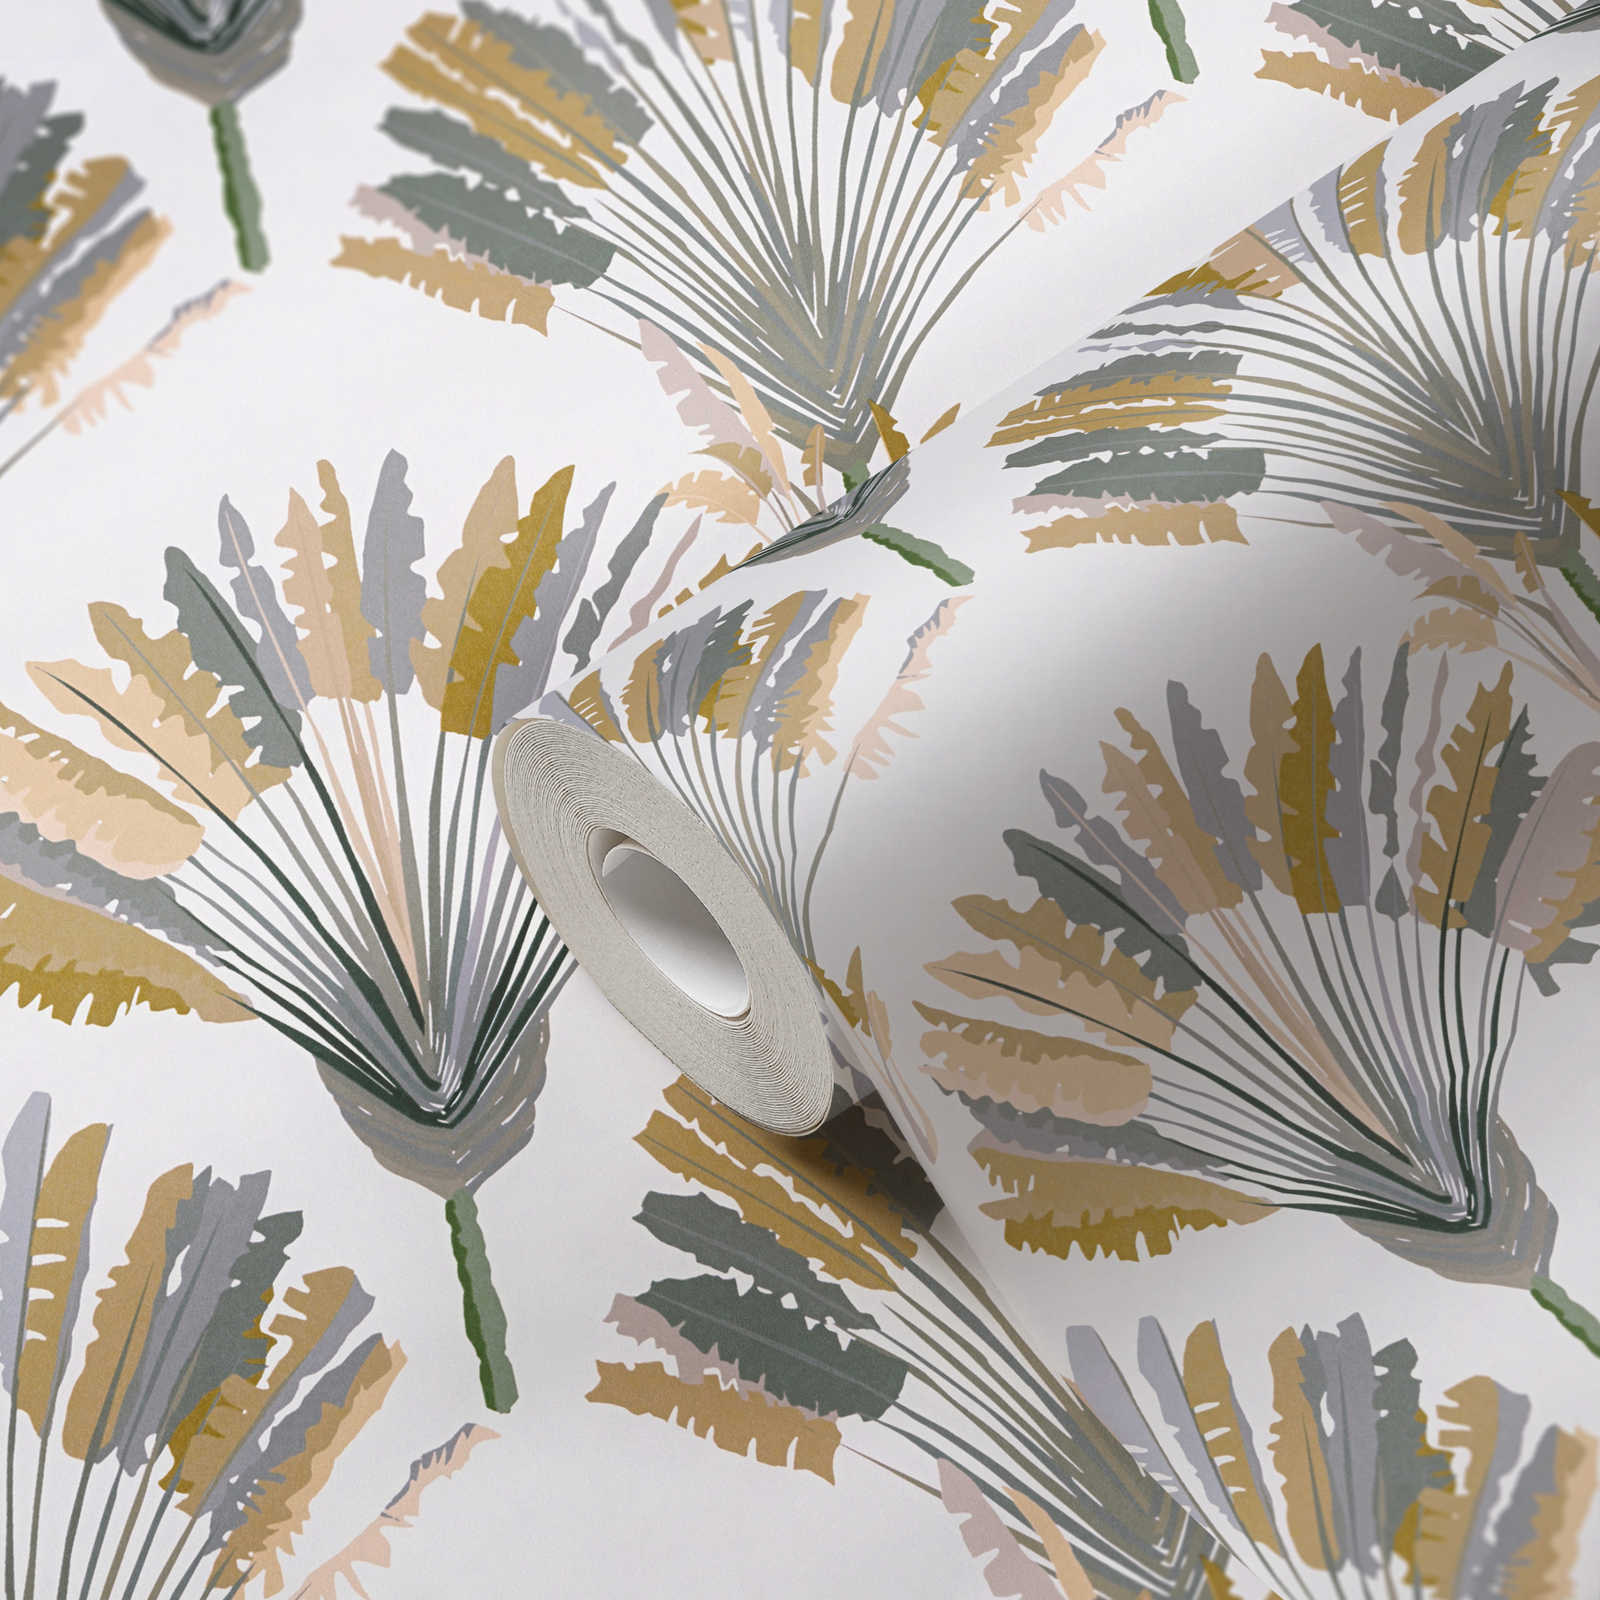             Papel pintado de palmeras con estampado en estilo moderno - amarillo, gris, blanco
        